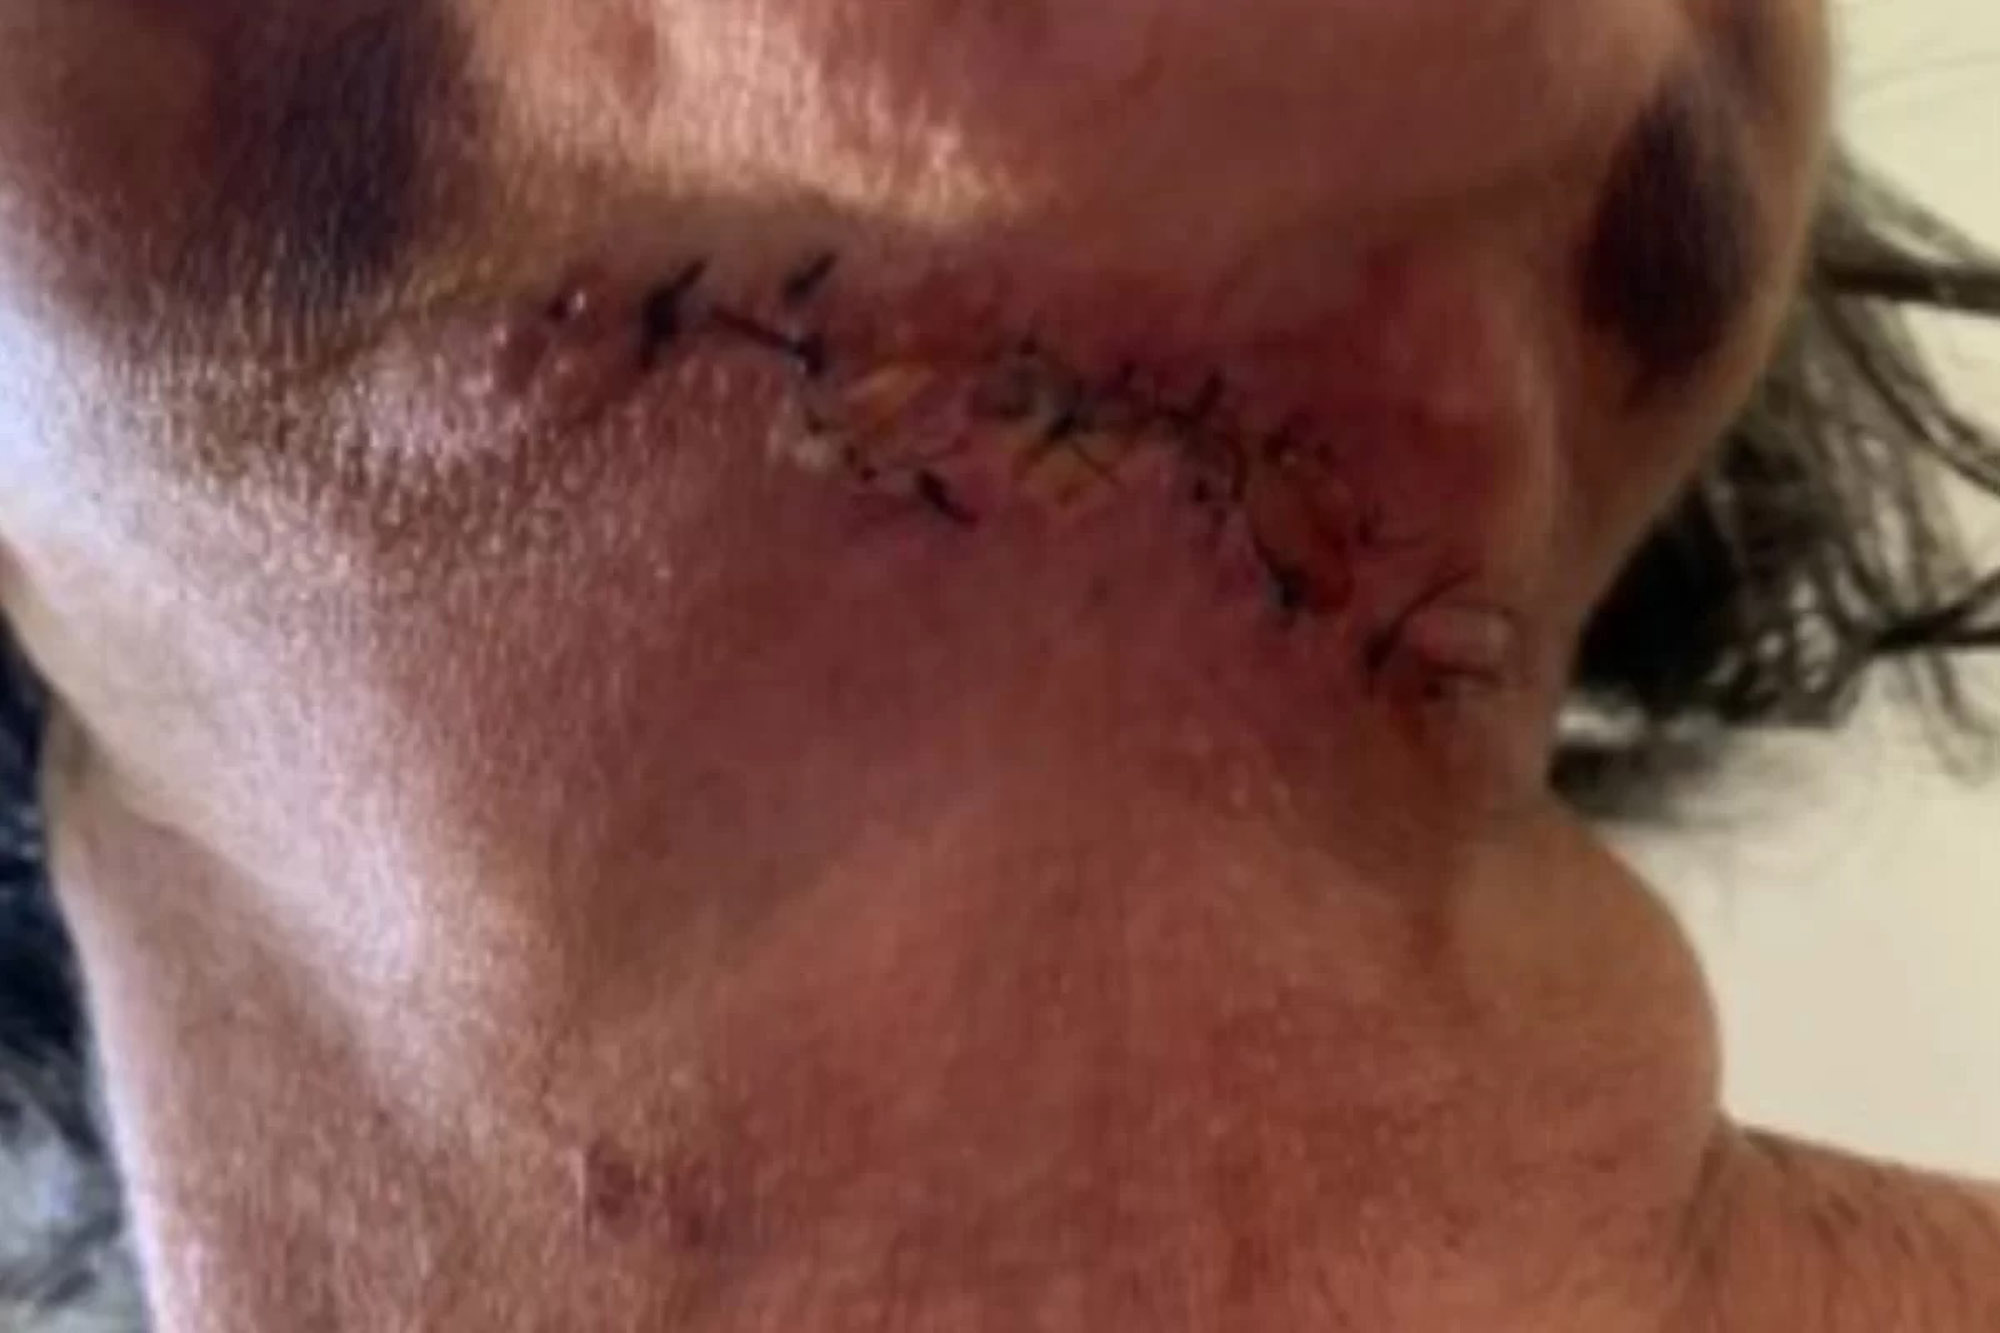 Ein drittes Opfer hat eine Frankenstein-ähnliche, gezackte Narbe am Hals